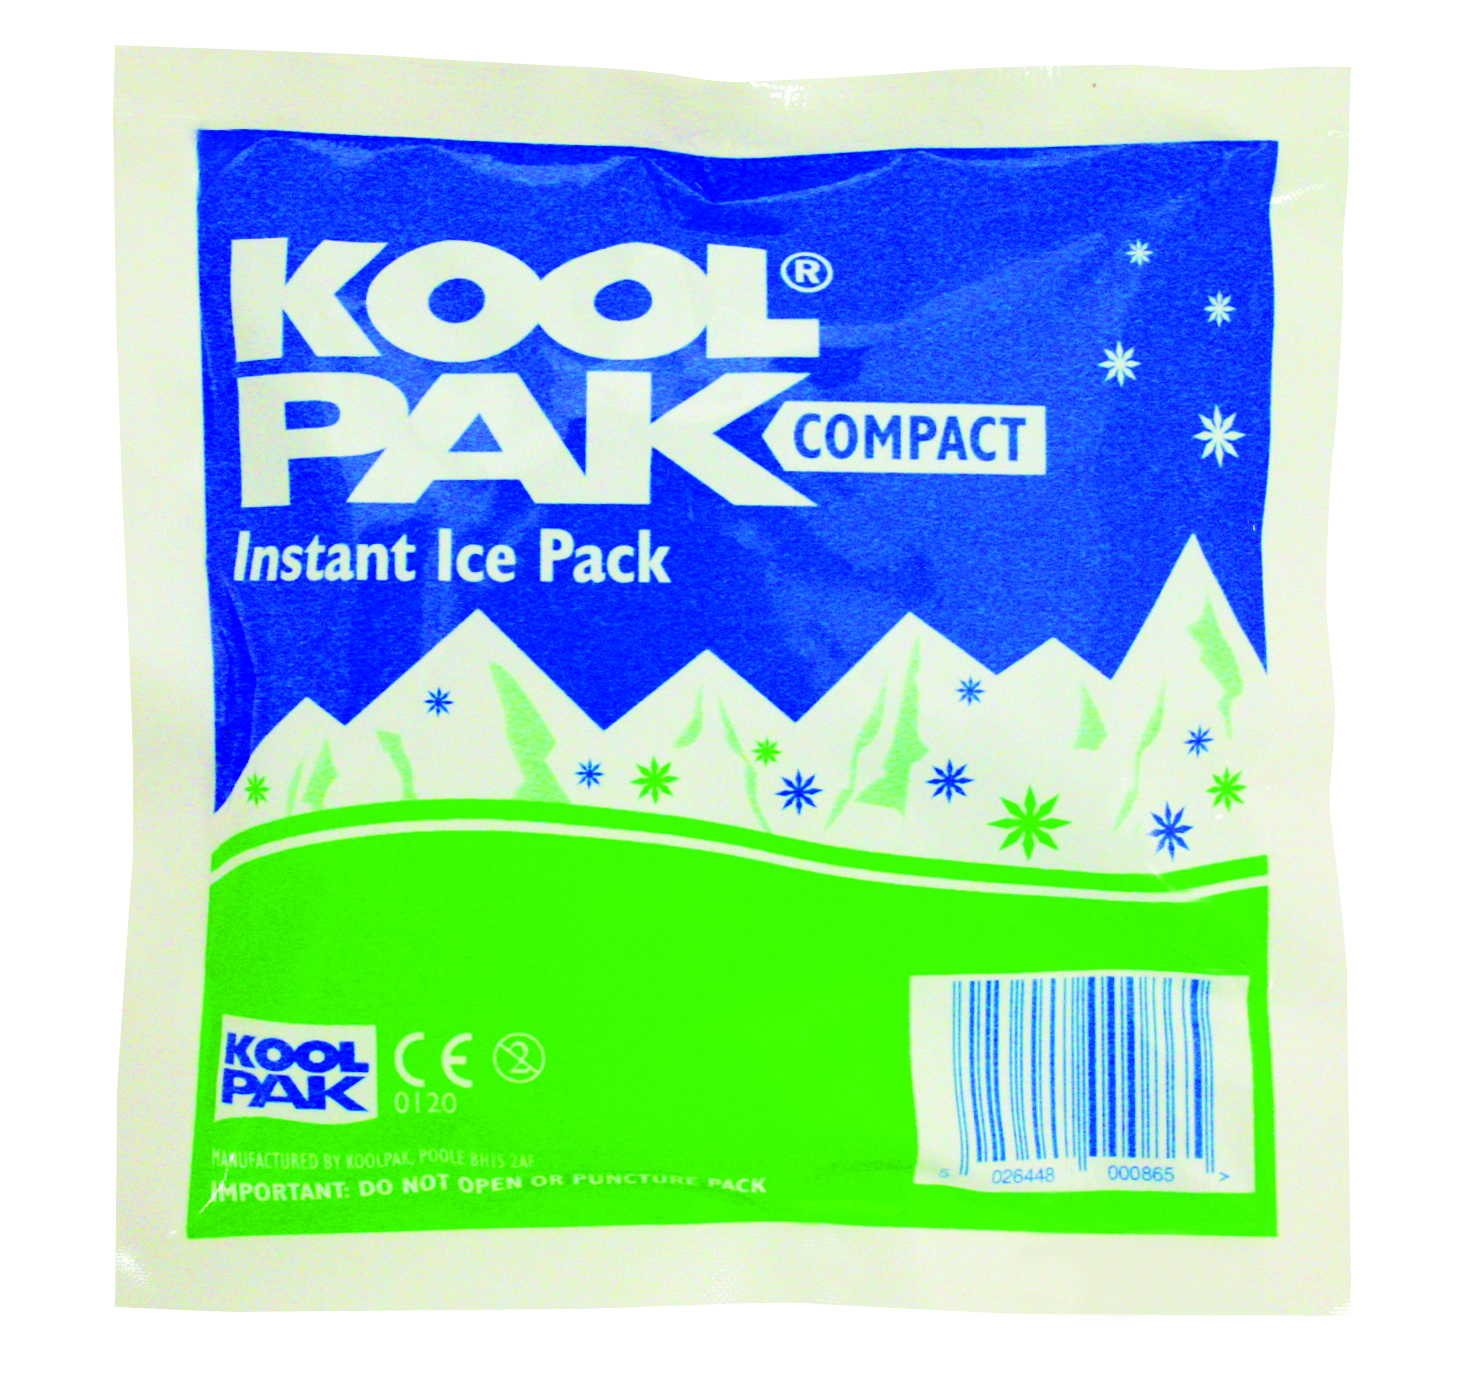 636917164641752293_koolpak-compact-instant-ice-pack.jpg